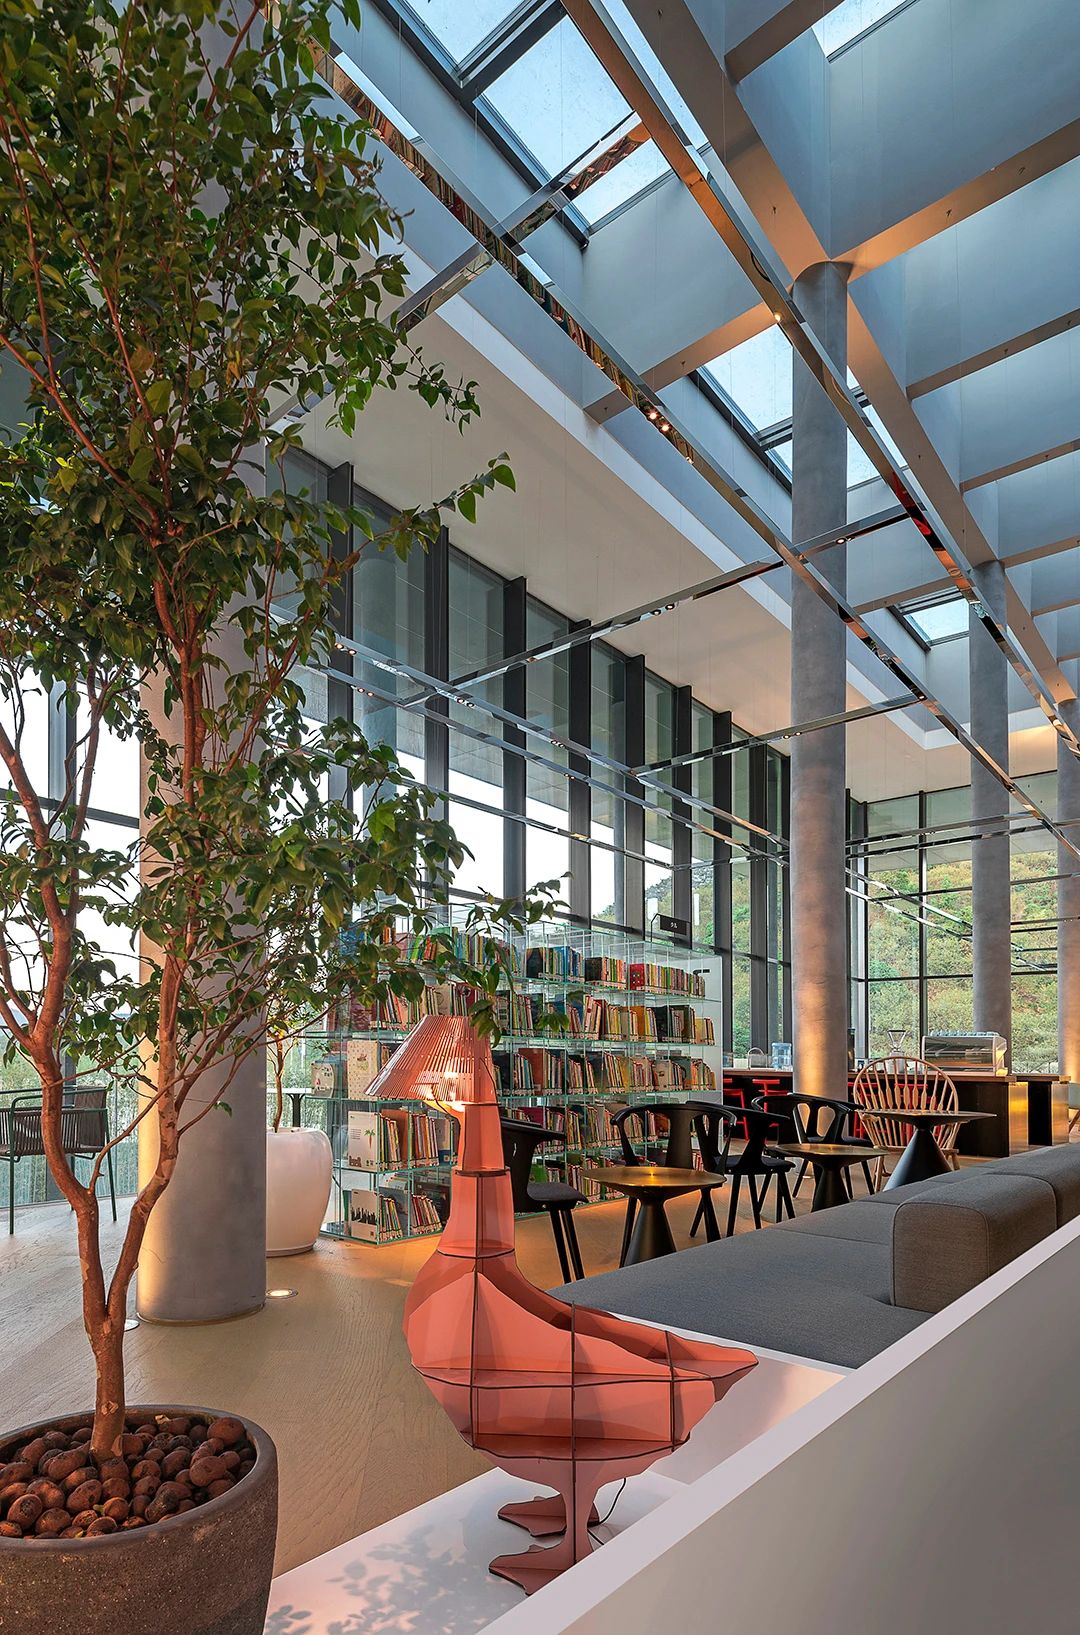 广州图书馆 - 品秀星樾分馆室内灯光设计-光影结合,现代简约风格,主光源